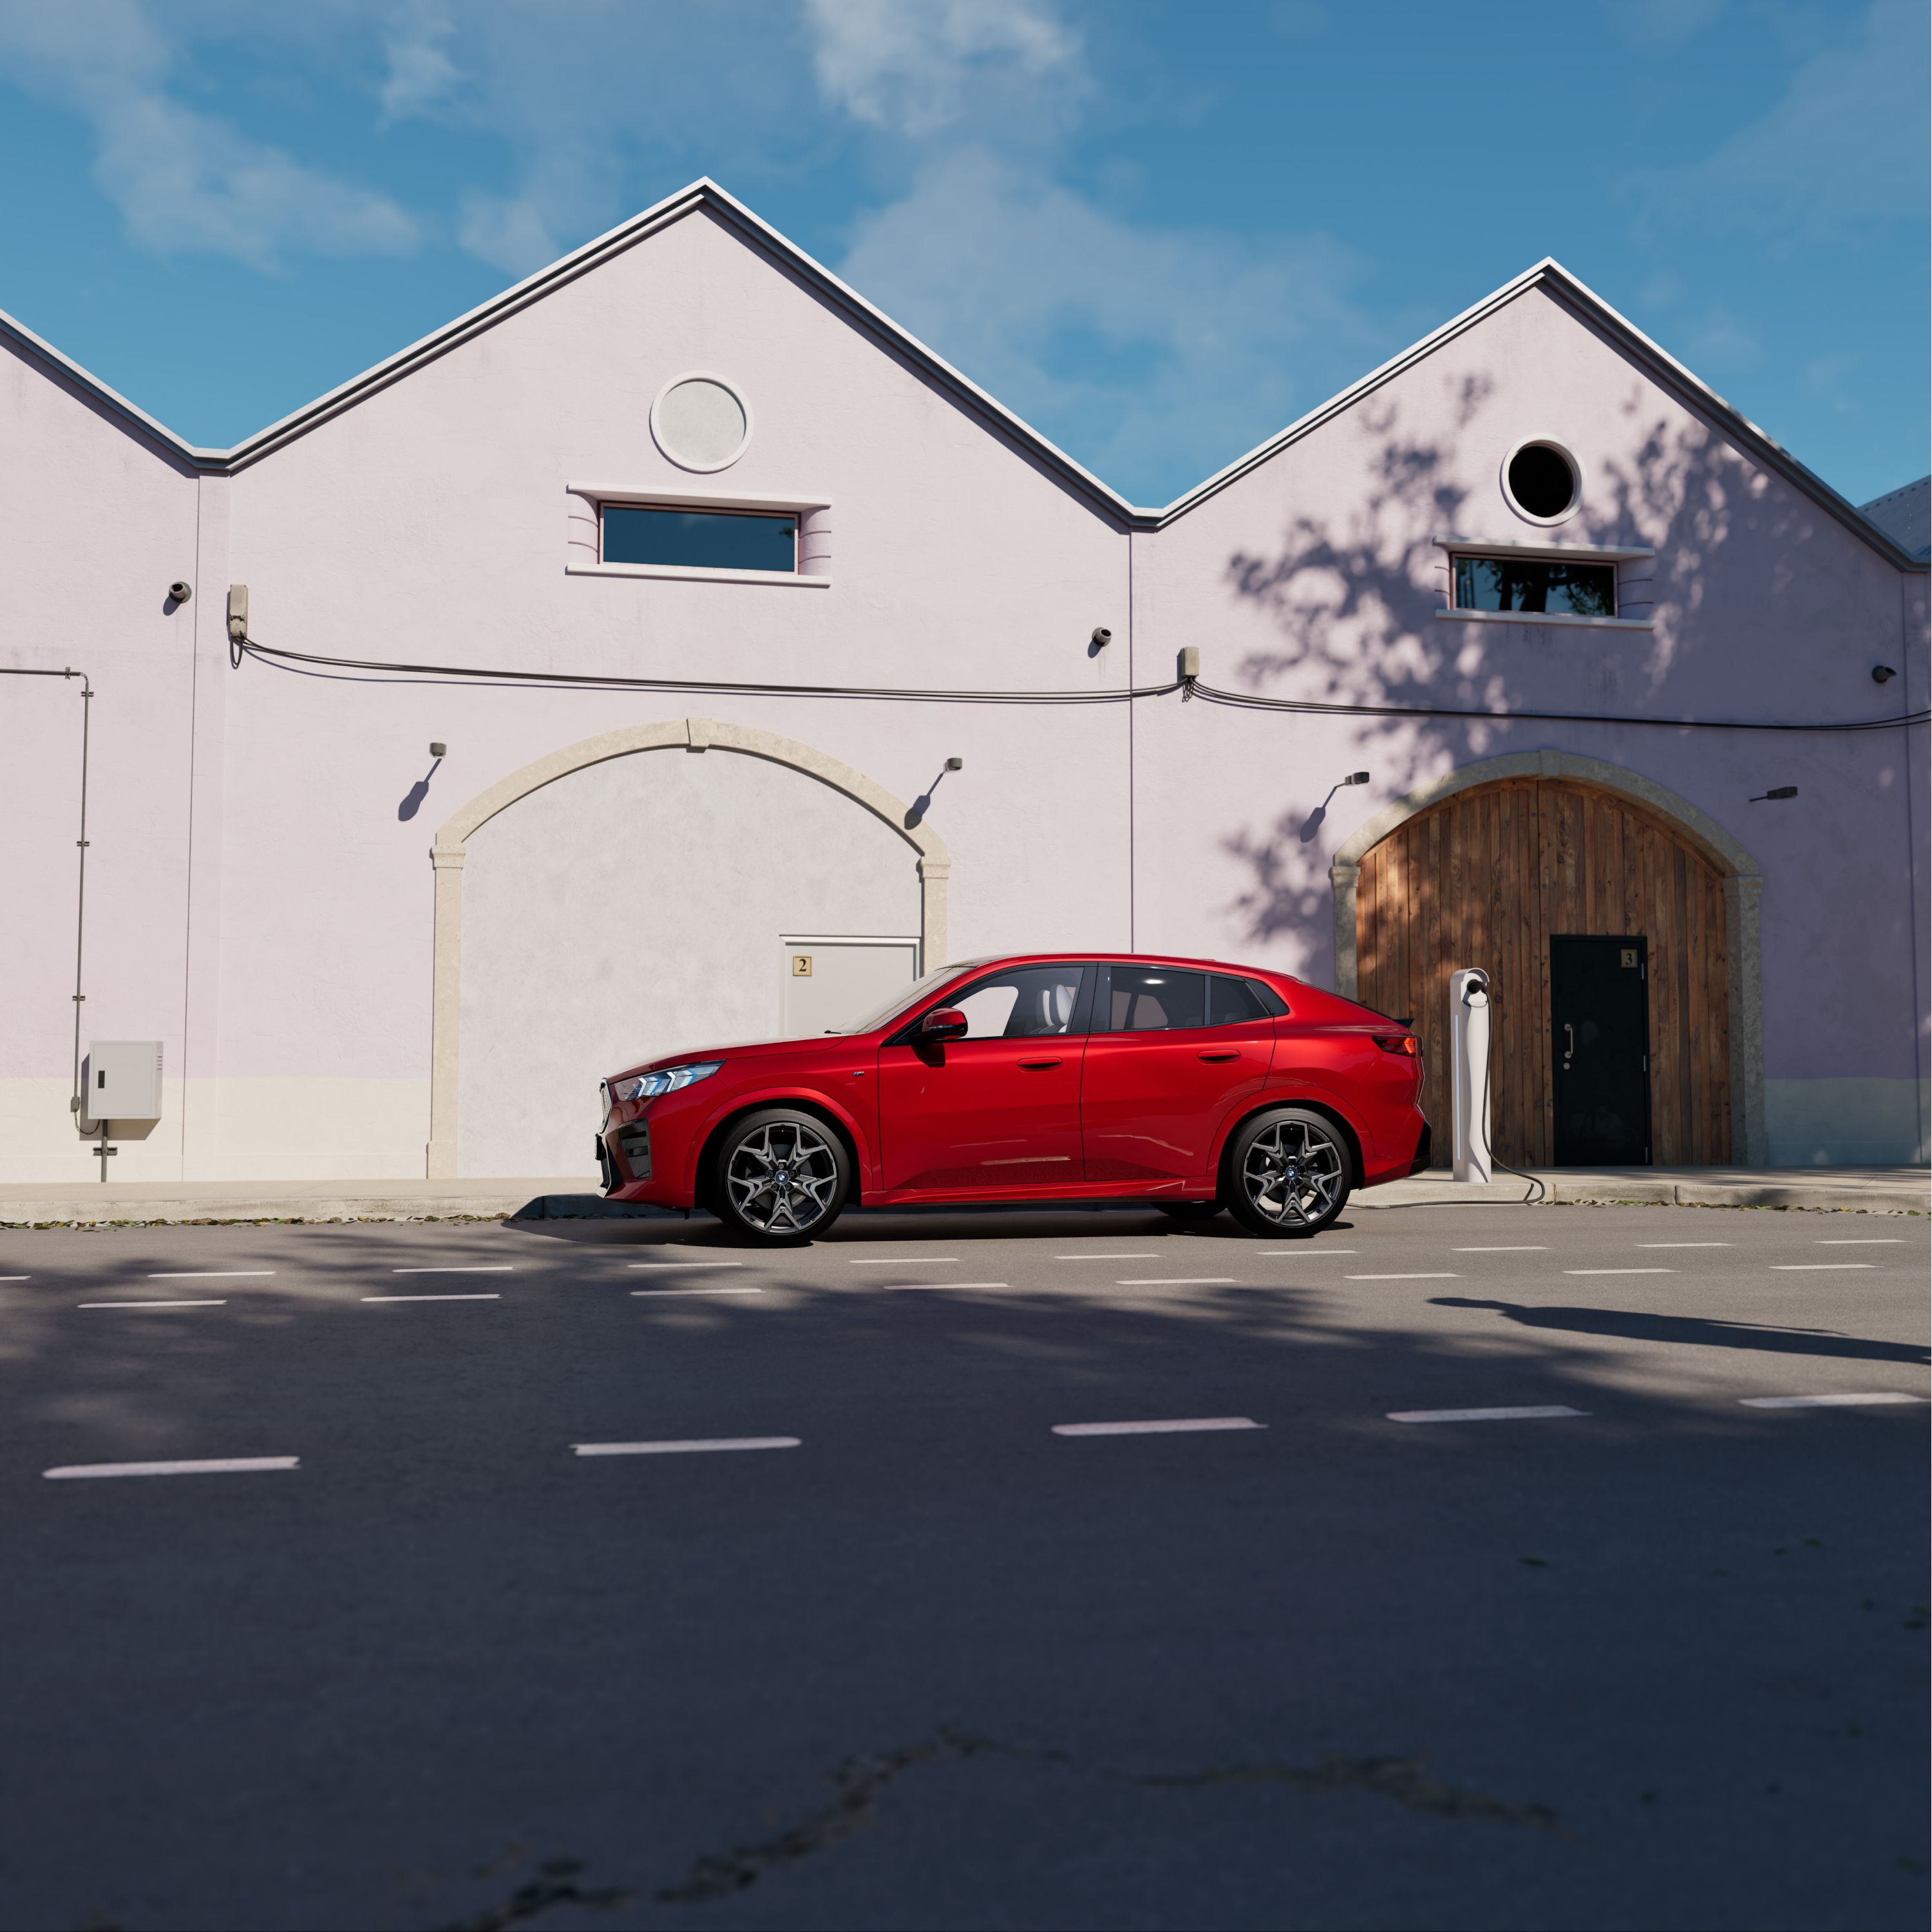 Metalik Kırmızı/Dragonfire gövde renginde Yeni BMW iX2 güneşli havada bir kır evinin önünde park halinde